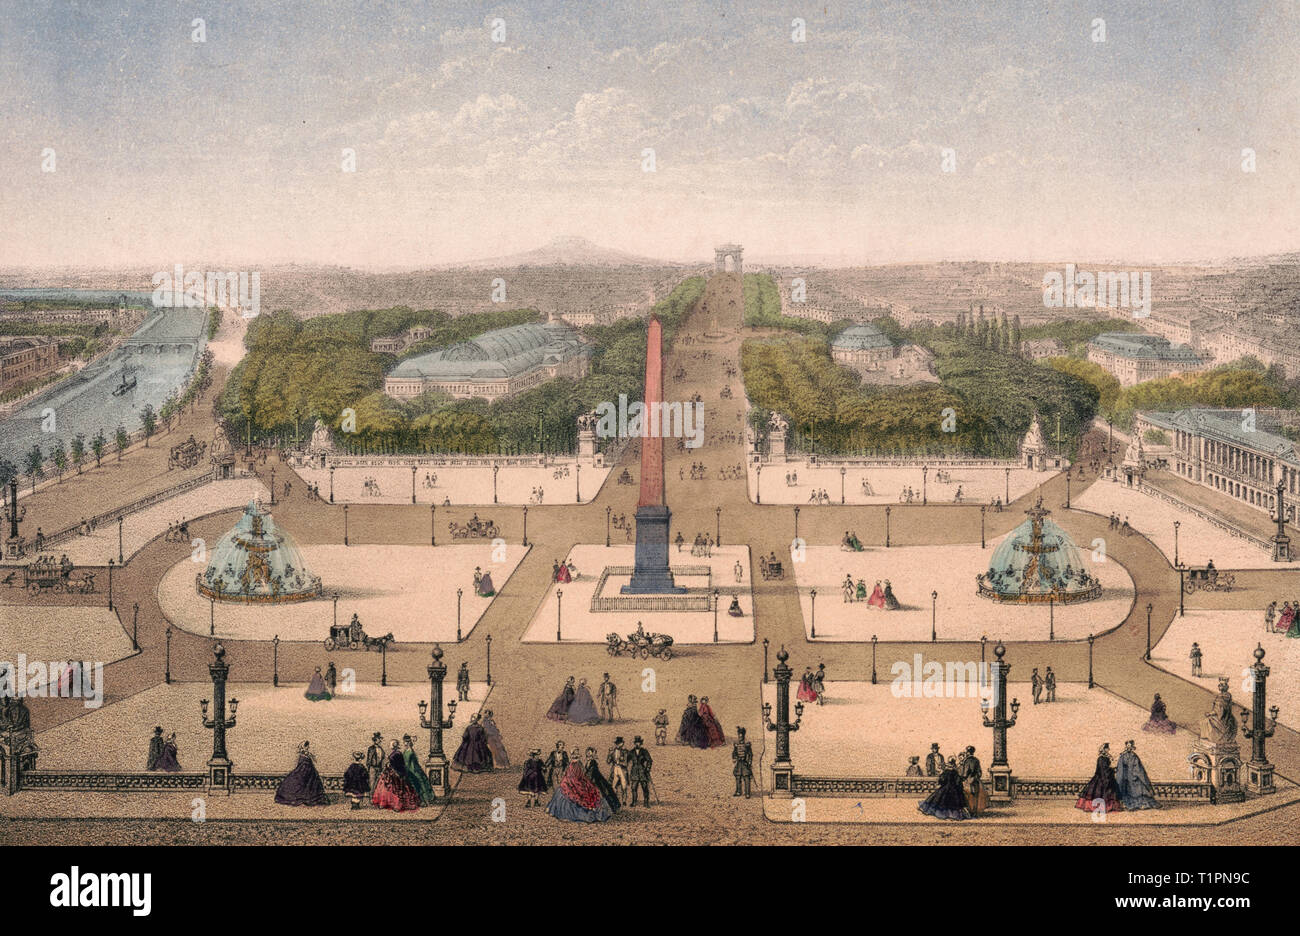 Paris. Place de la Concorde - Imprimer montre une vue d'obélisque à la place de la Concorde, avec les piétons sur la place, les fontaines, la Seine, et d'autres bâtiments. Vers 1870 Banque D'Images